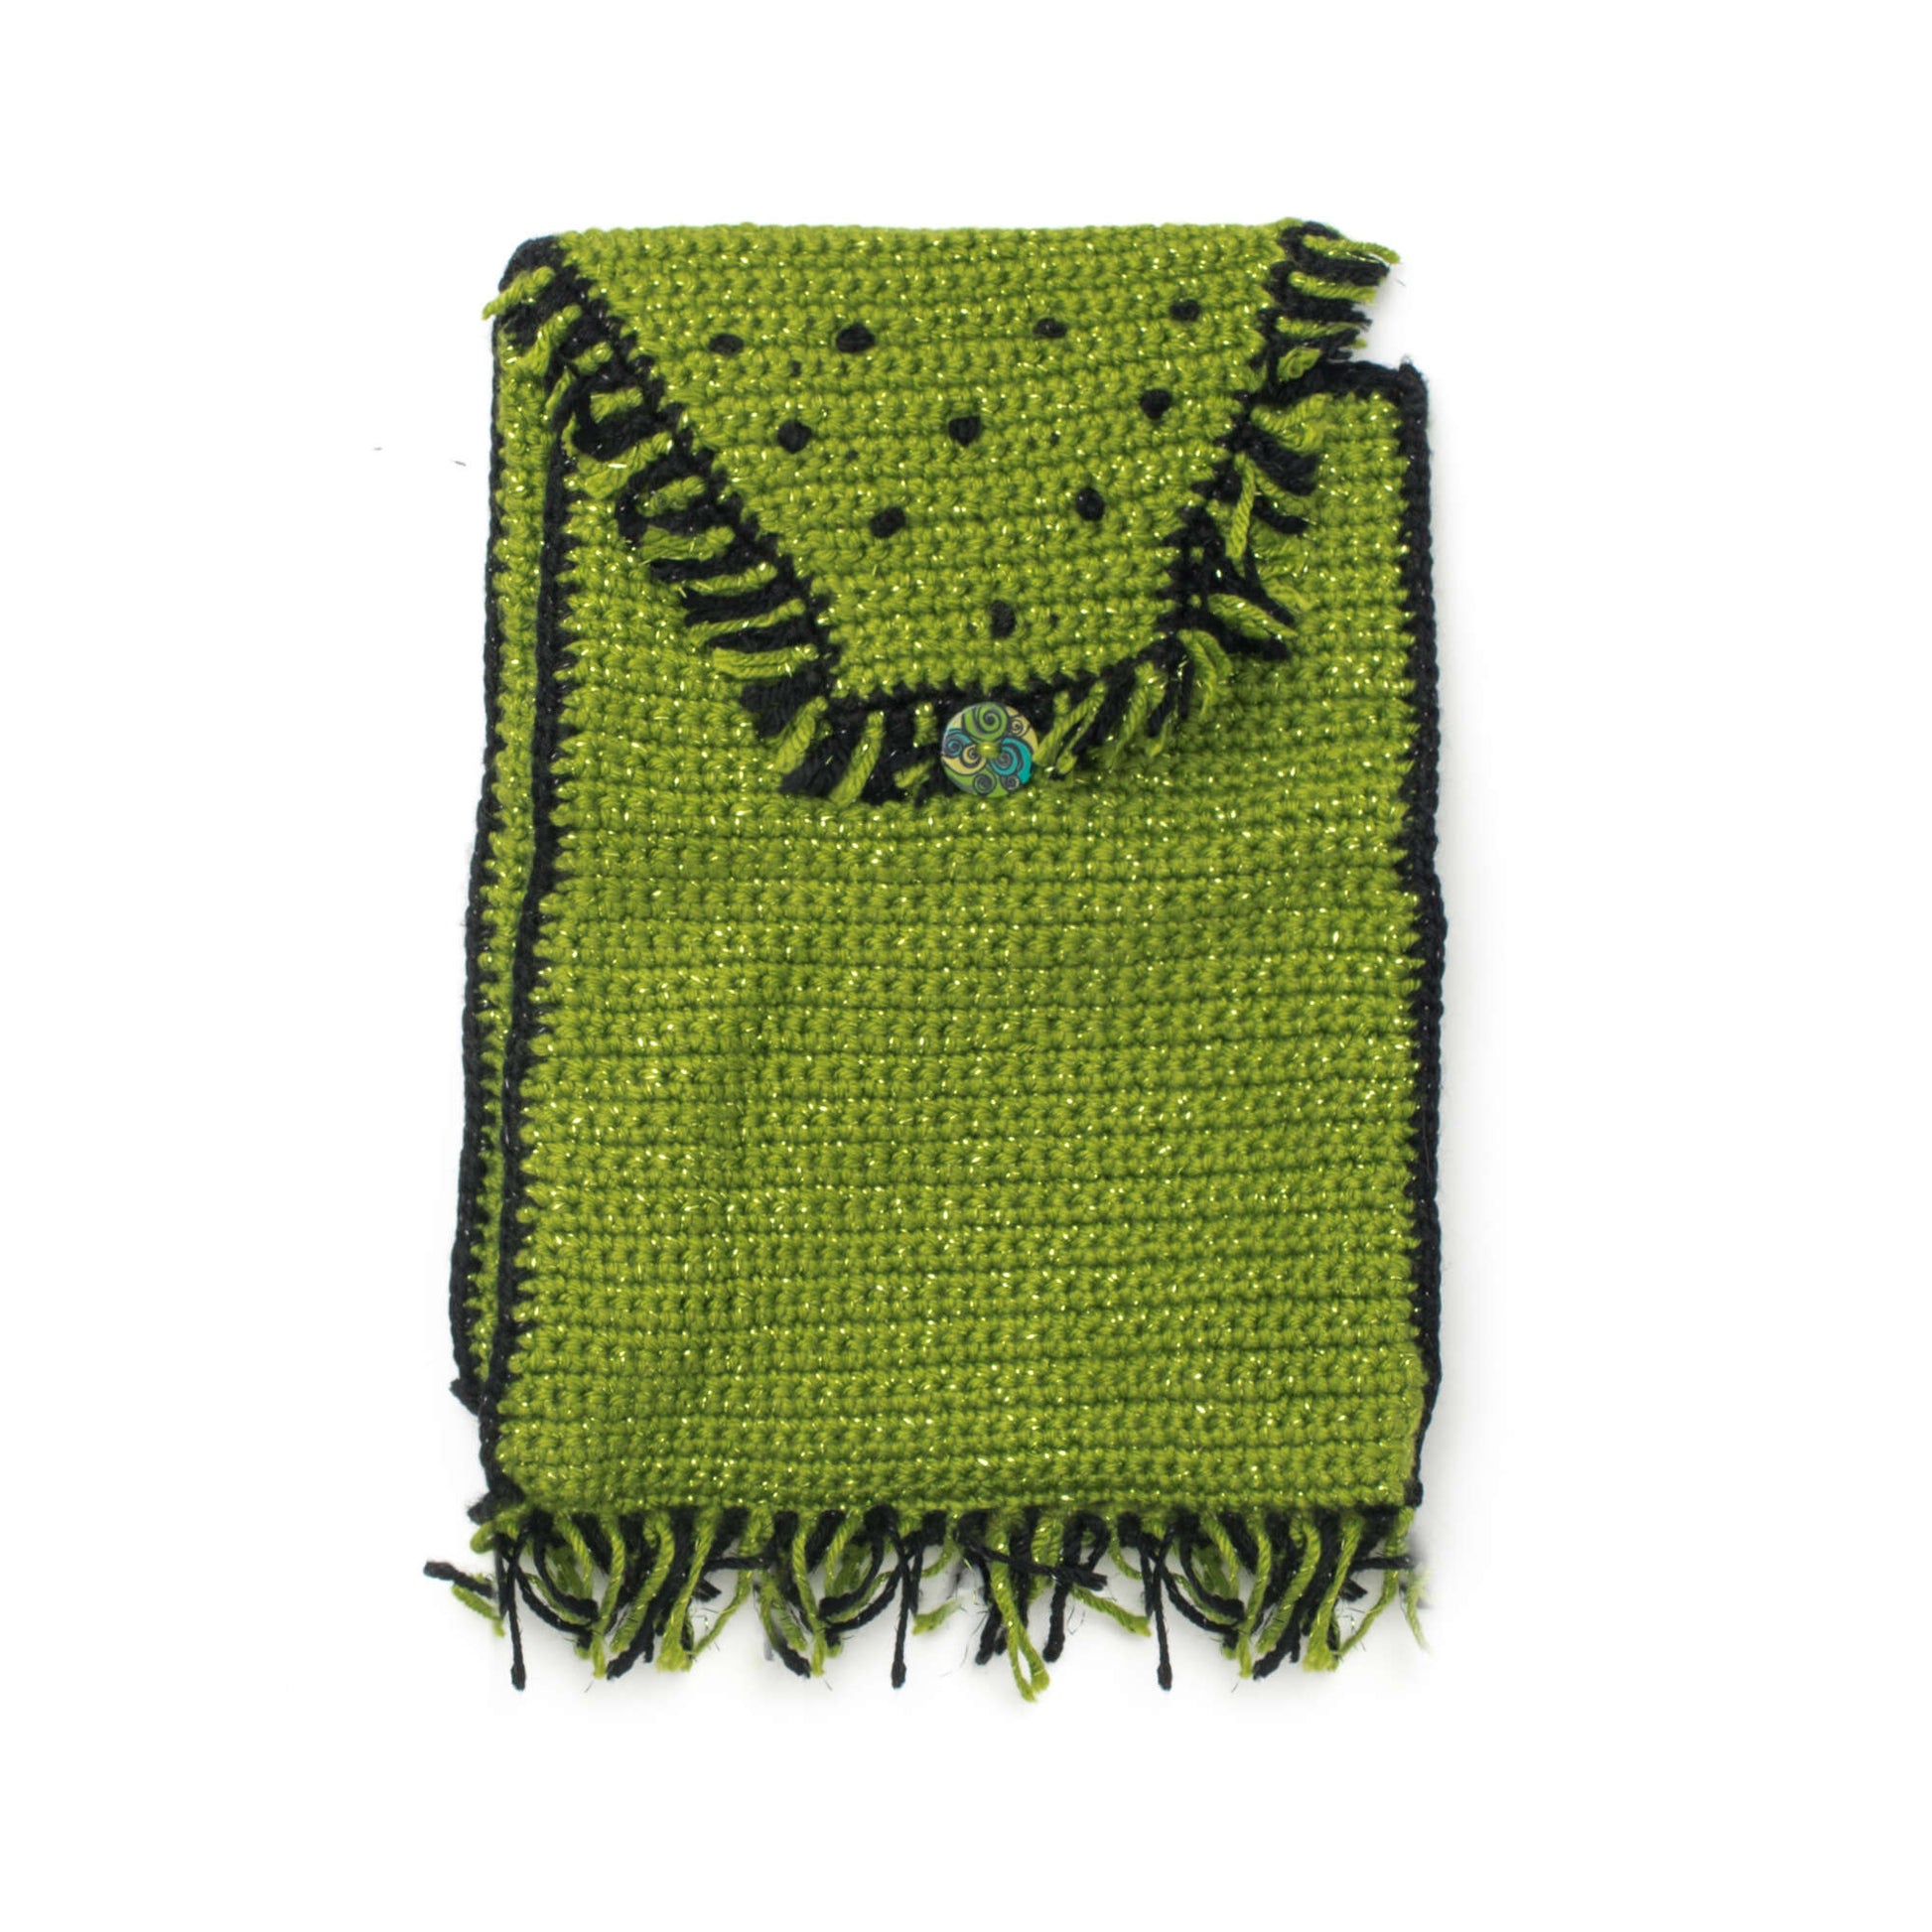 Free Caron Crochet Little Girl's Backpack Pattern